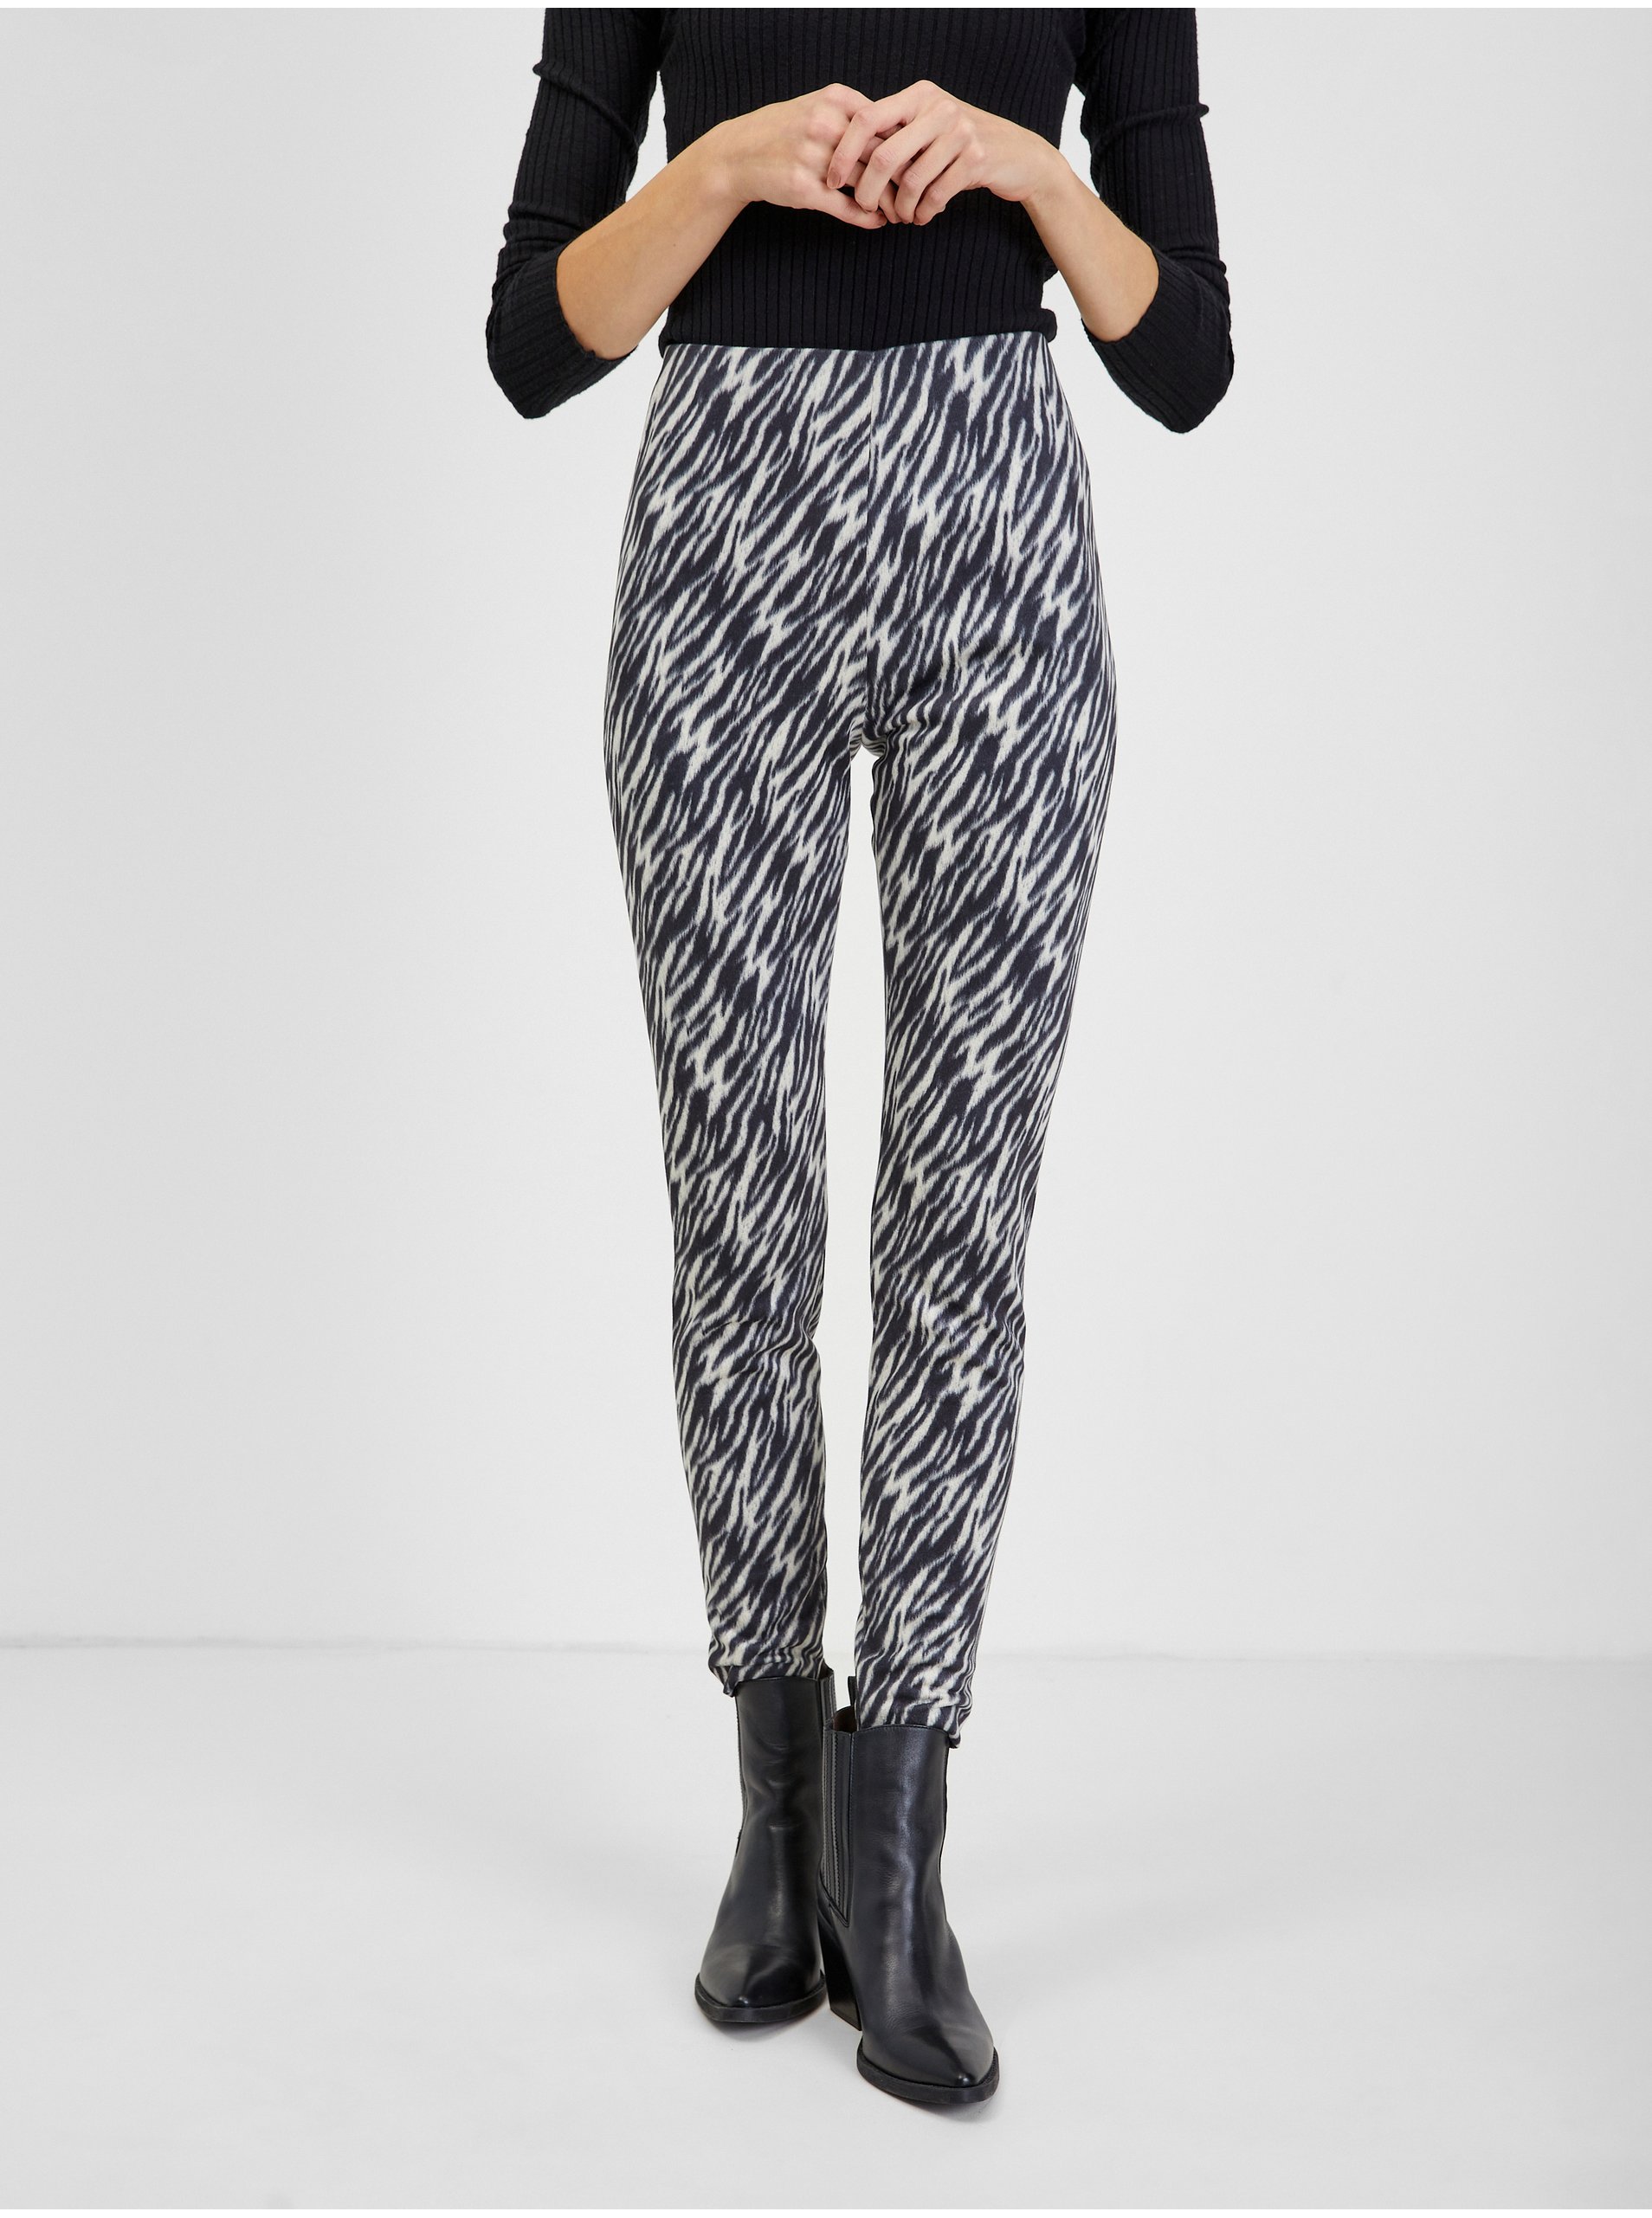 E-shop Bílo-černé dámské vzorované kalhoty v semišové úpravě ORSAY